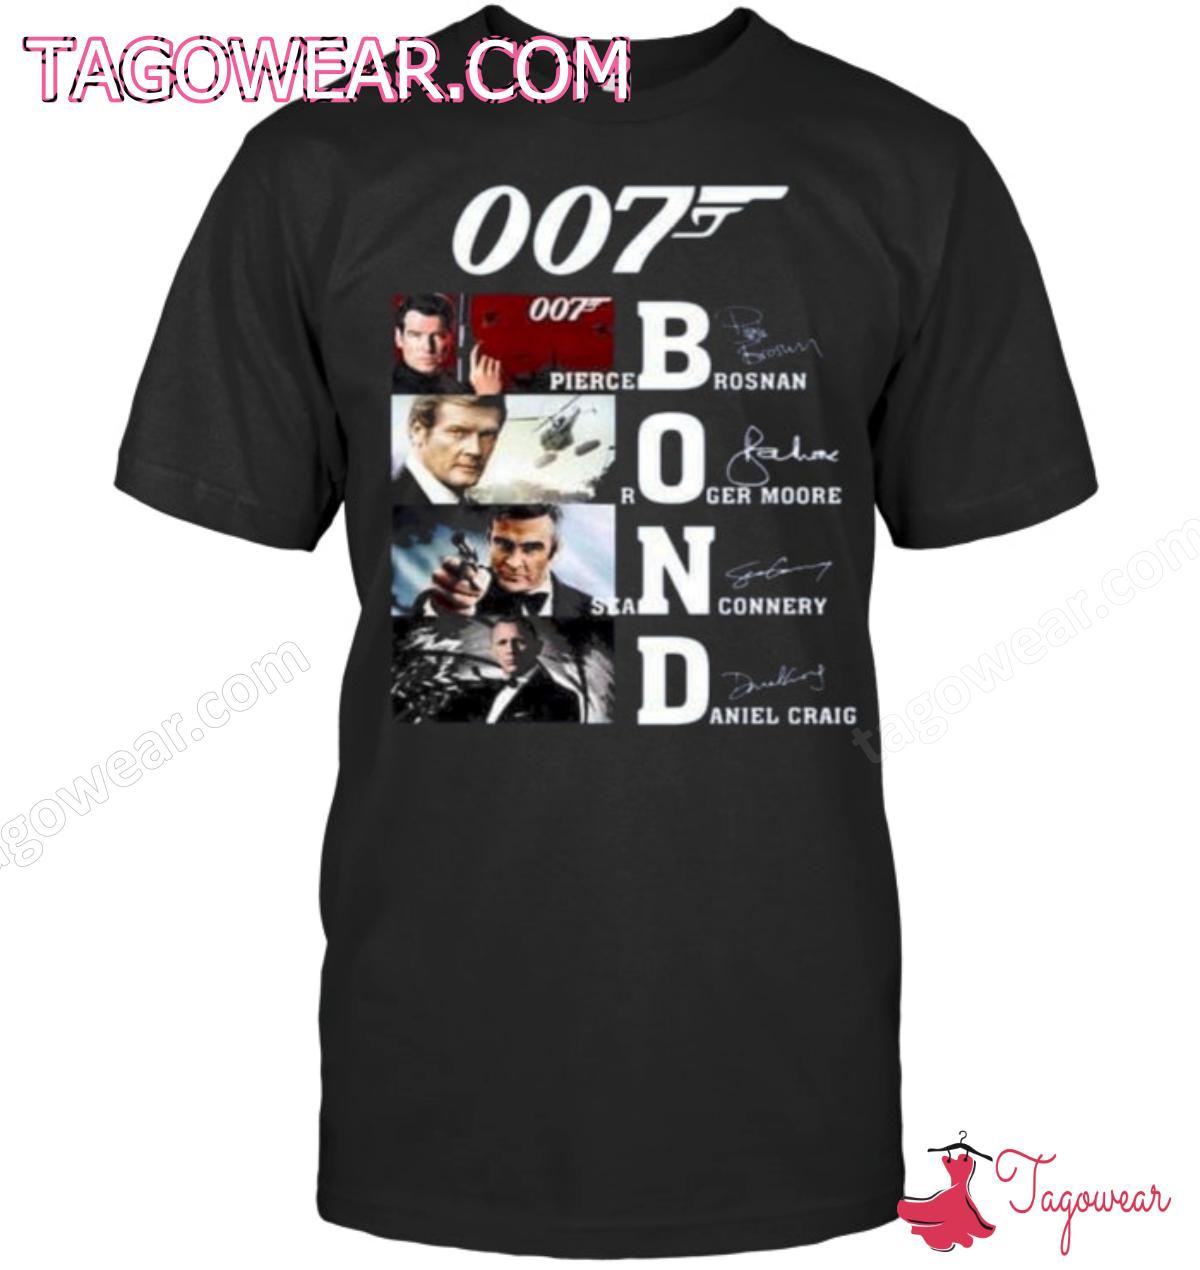 James Bond 007 Actors Signatures Shirt